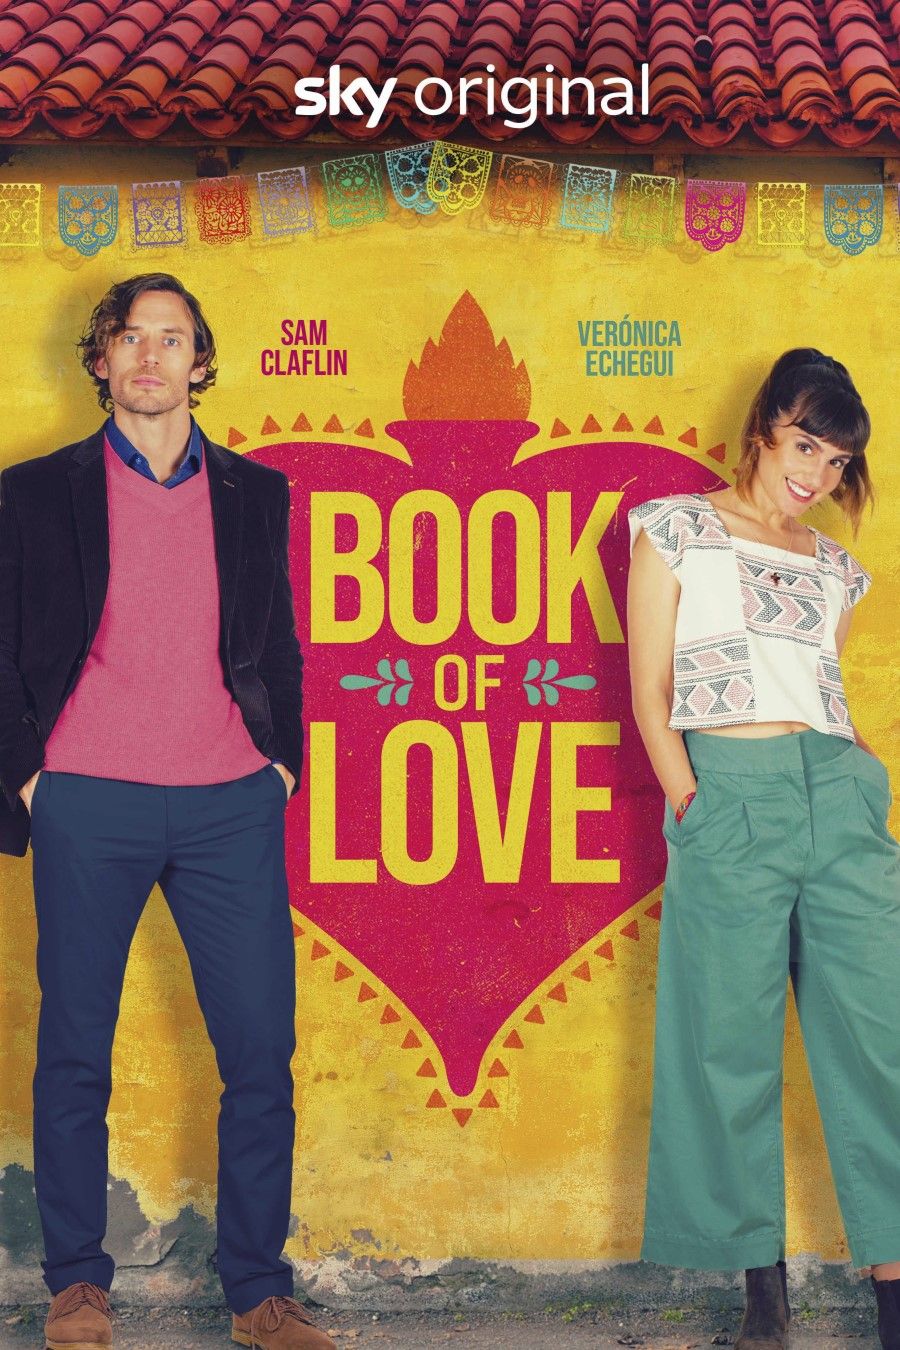 Das Sky Original "Book of Love" ist gestartet